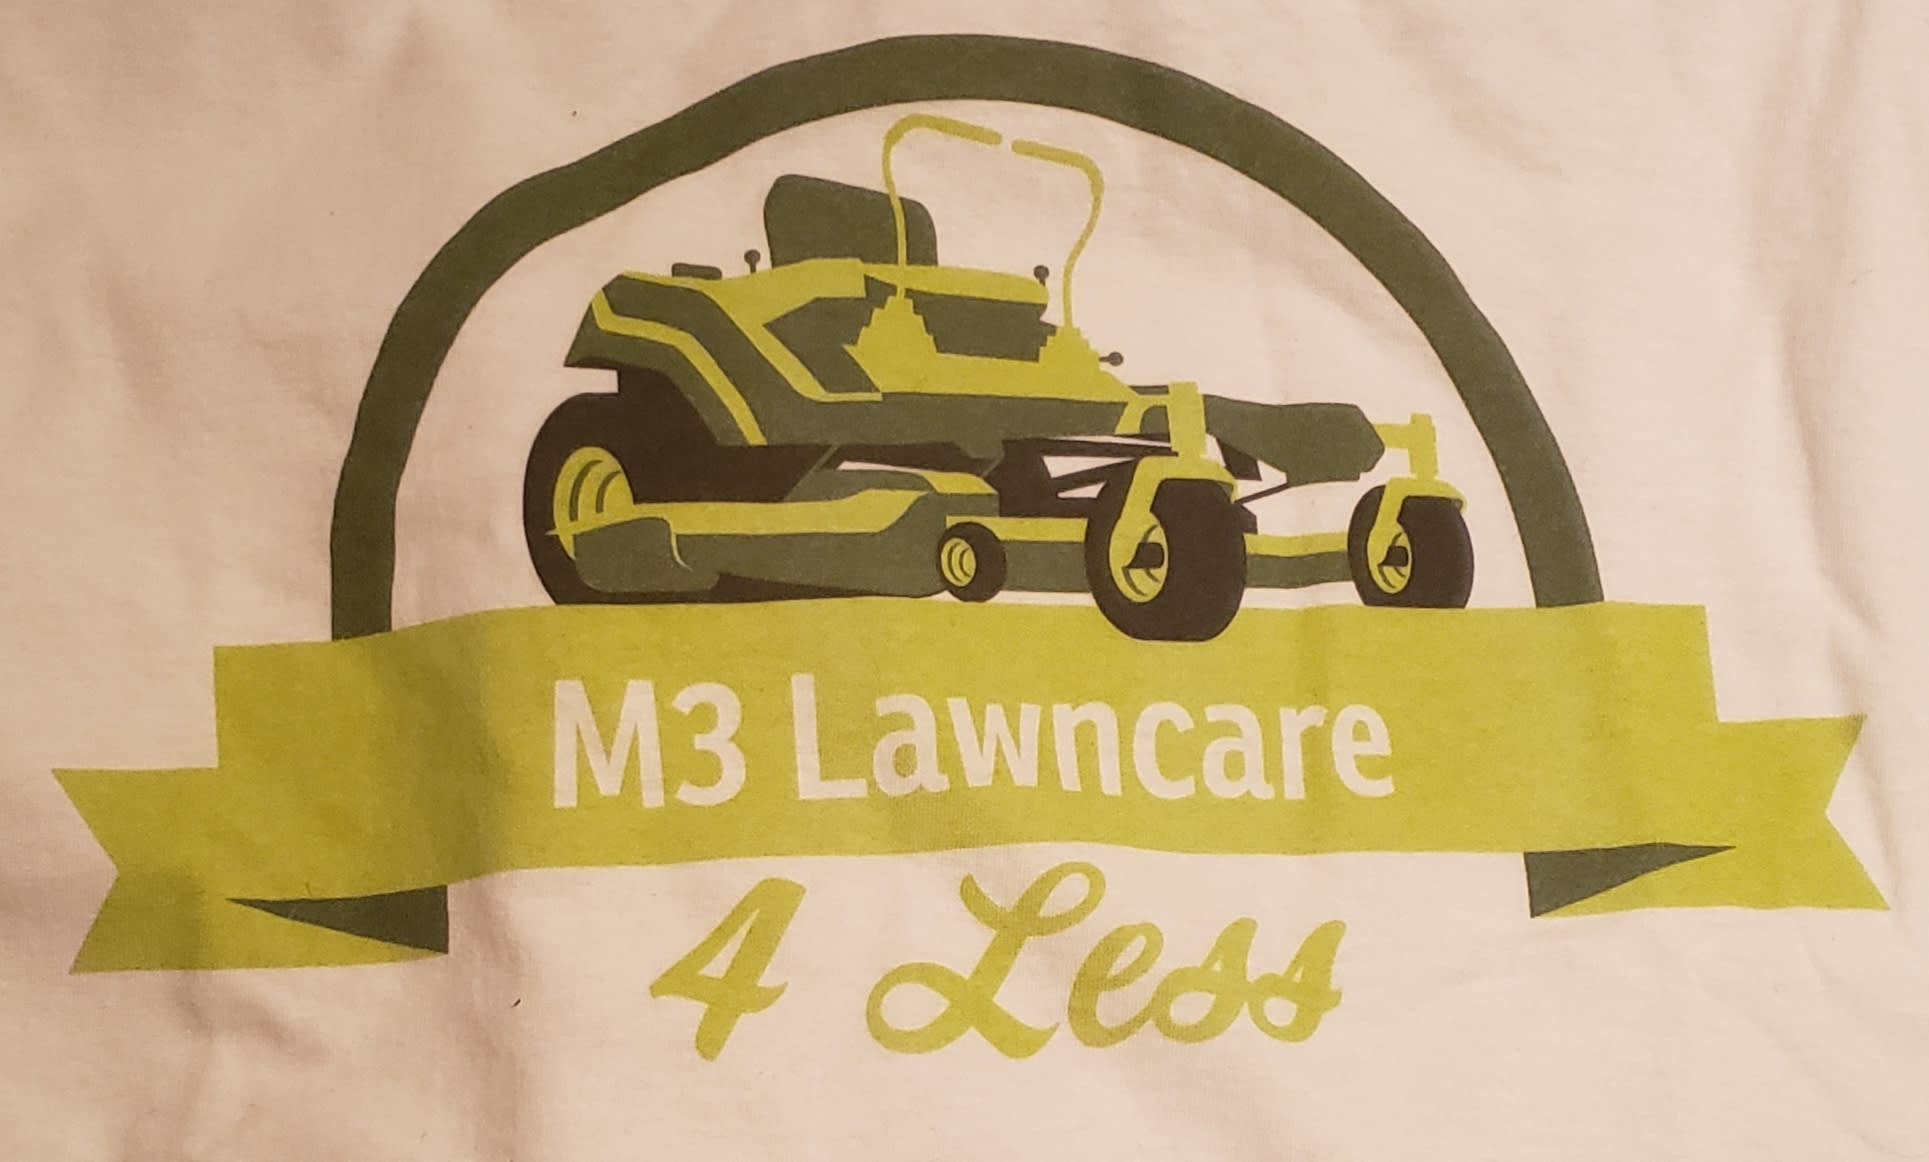 M3 Lawncare 4 Less